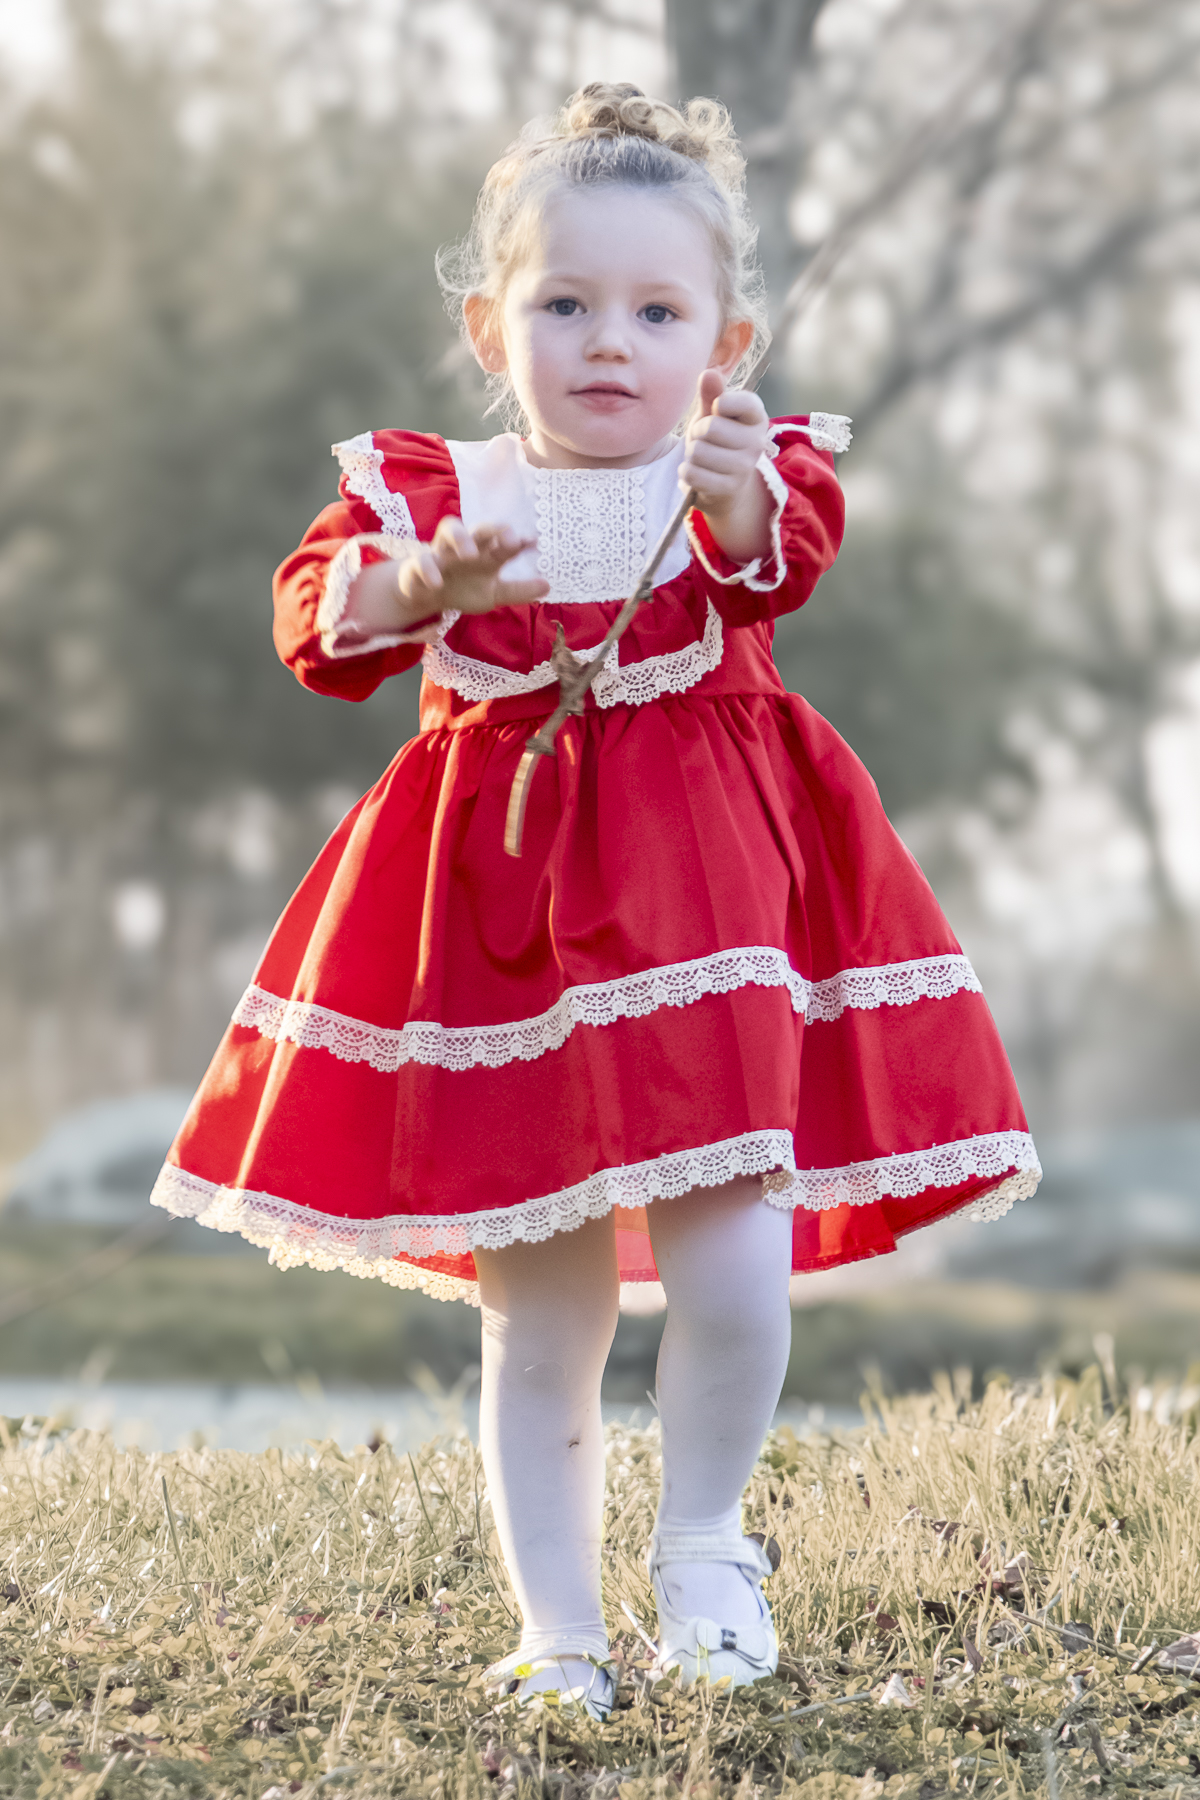 Kız Bebek Elbise Kız Çocuk Elbise Doğum Günü Parti Düğün Elbise Astarlı Saten Uzun Kol